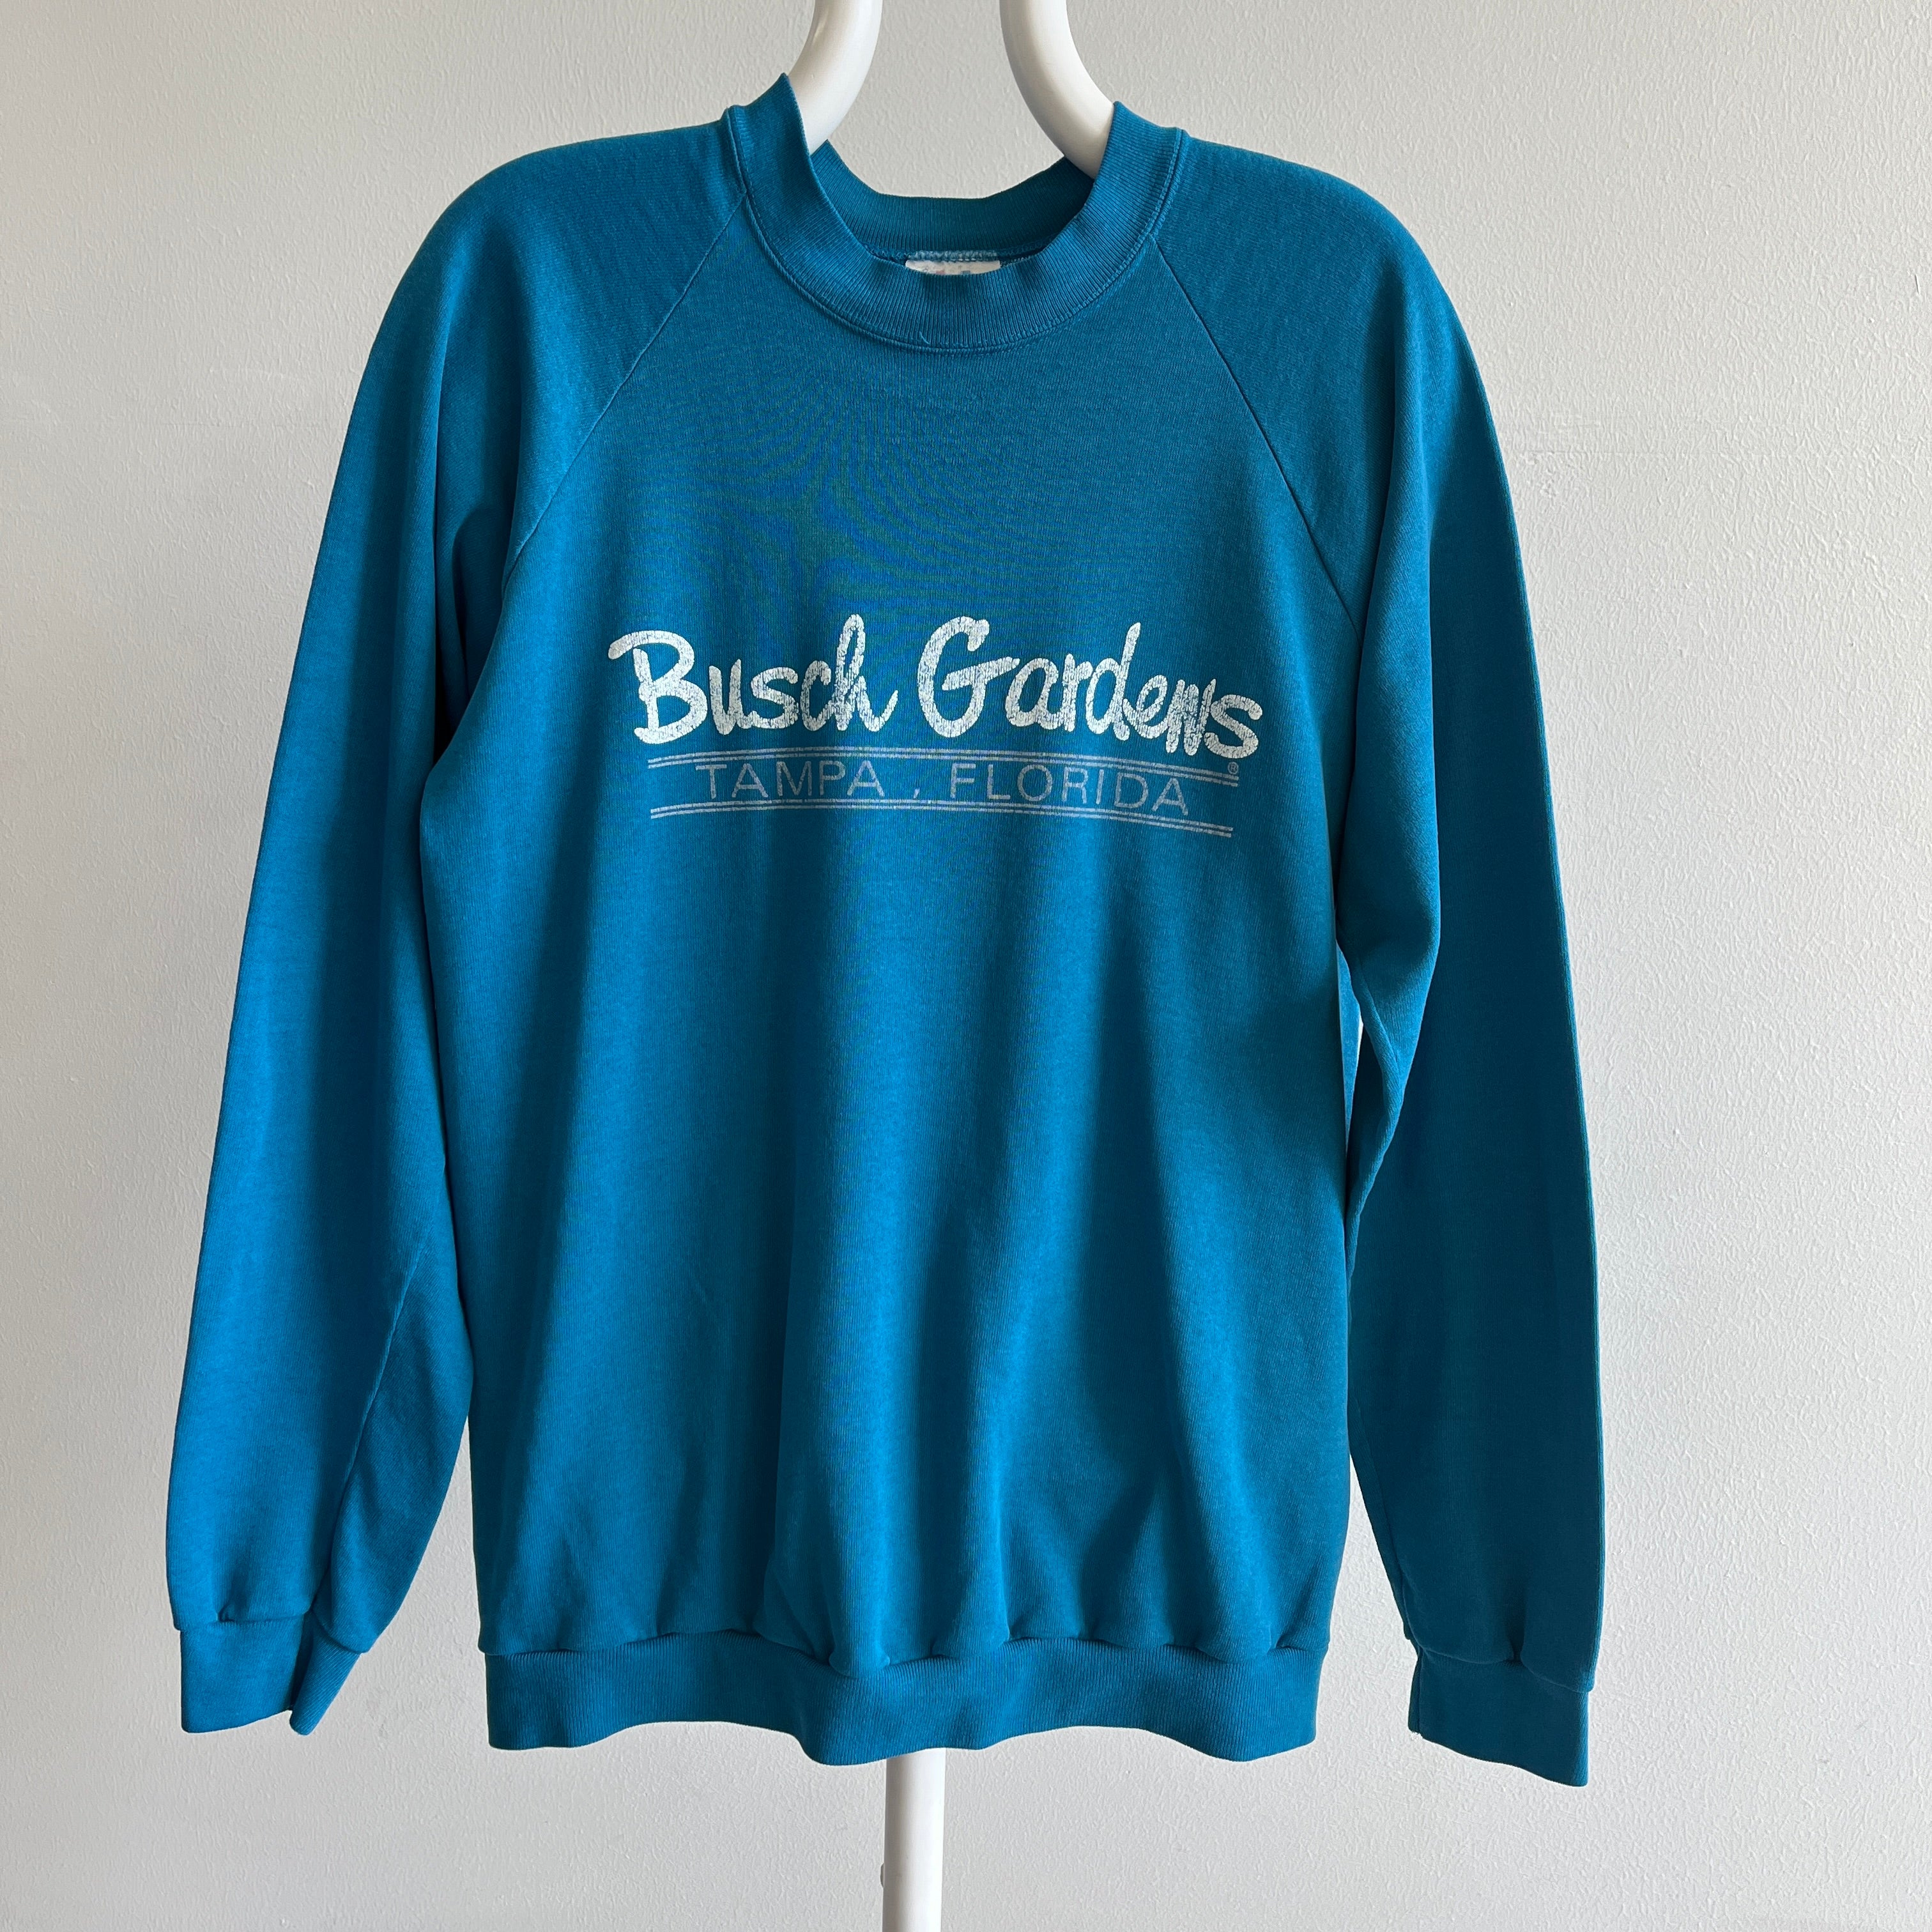 1980s Busch Gardens Super Thin and Slouchy Sweatshirt